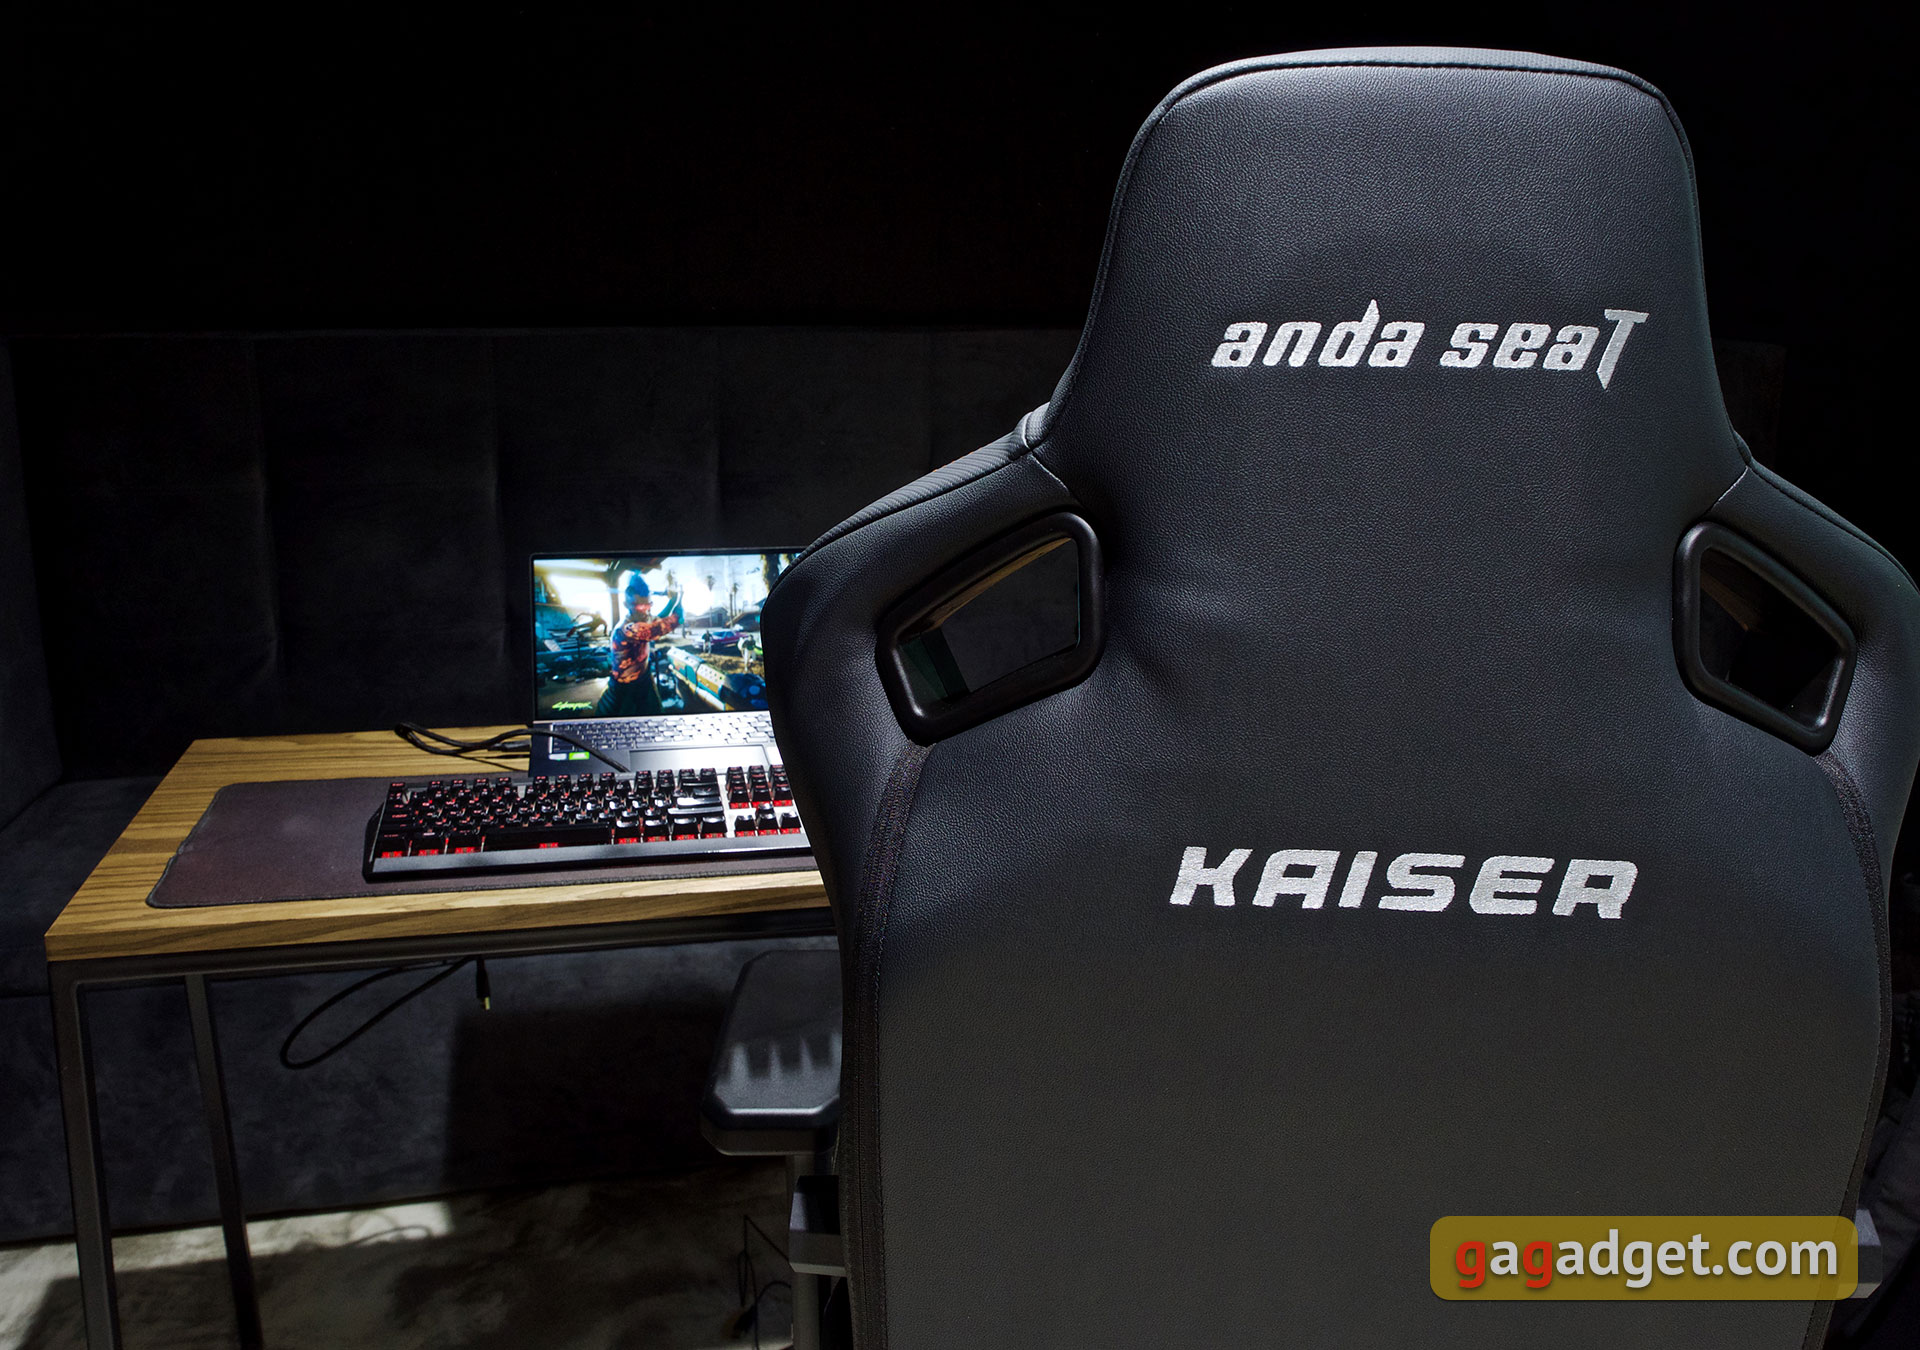 Trône pour le jeu : un examen du Anda Seat Kaiser 3 XL-19